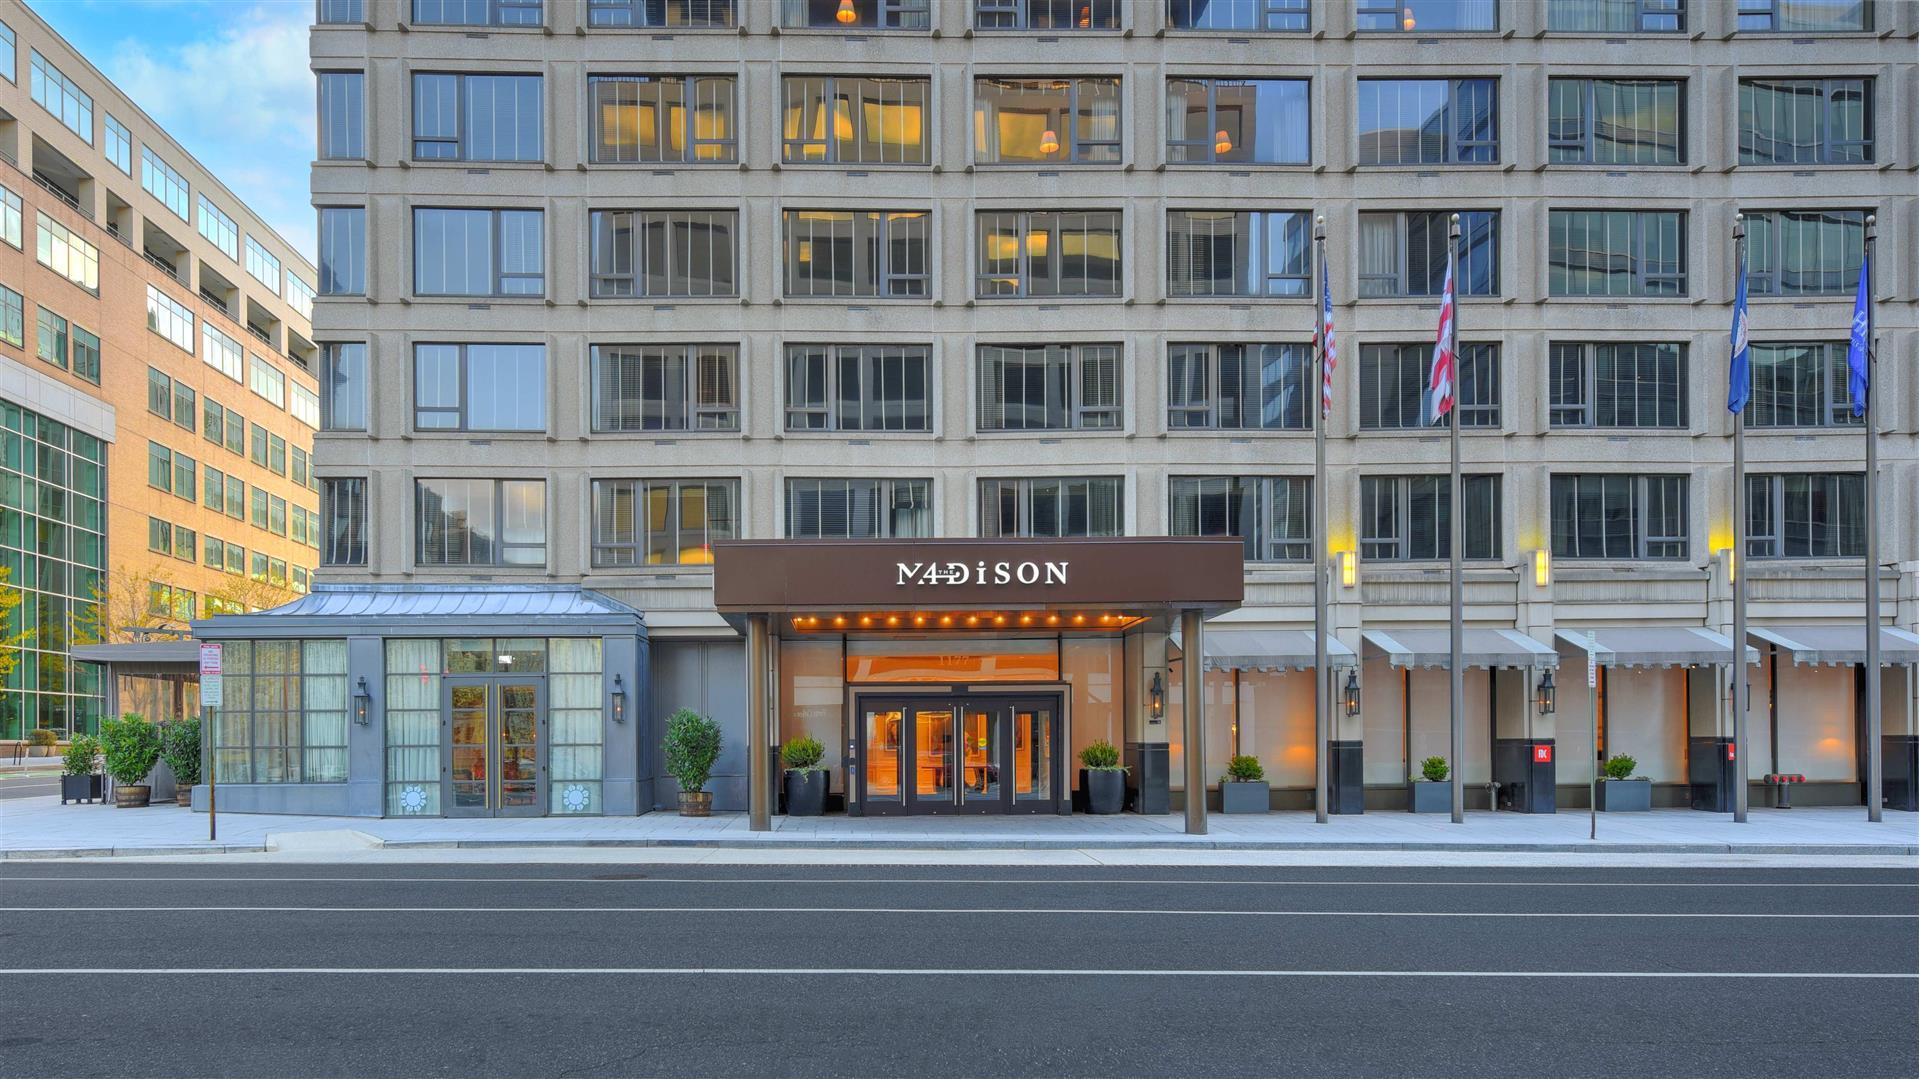 The Madison Hotel in Washington, DC